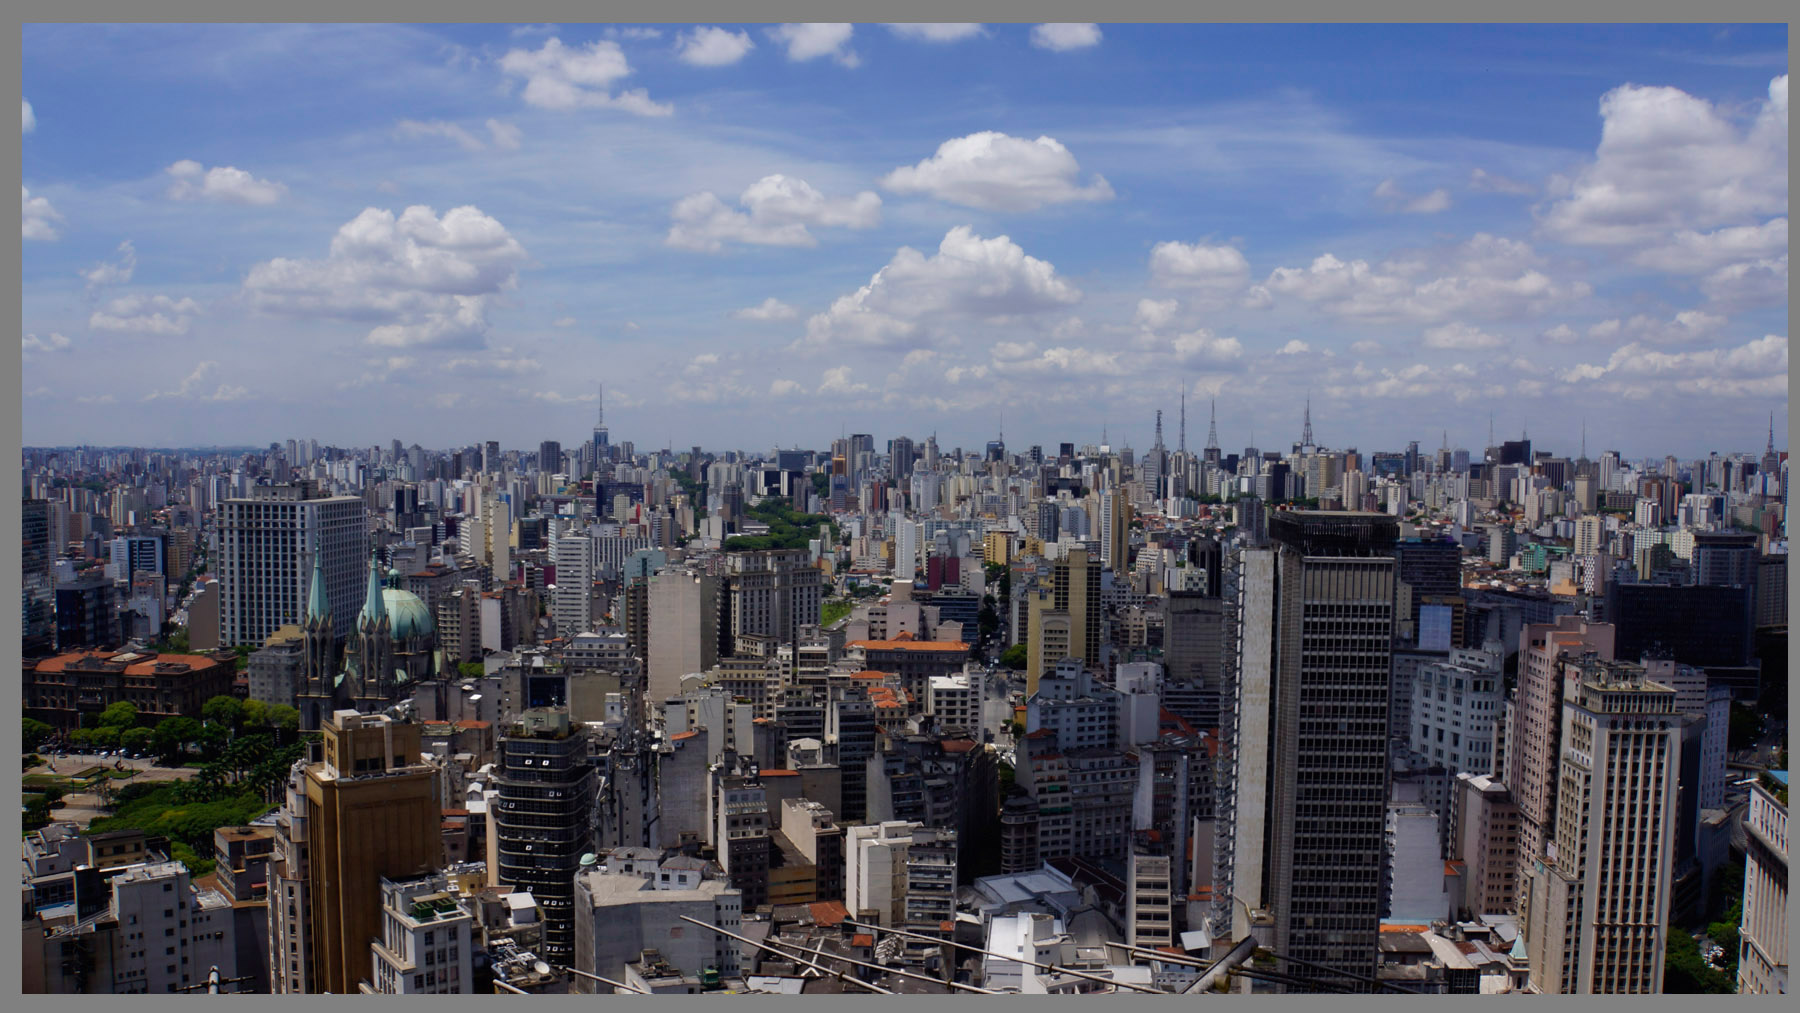 Sao Paulo wirkt ein wenig wie ein Legokasten